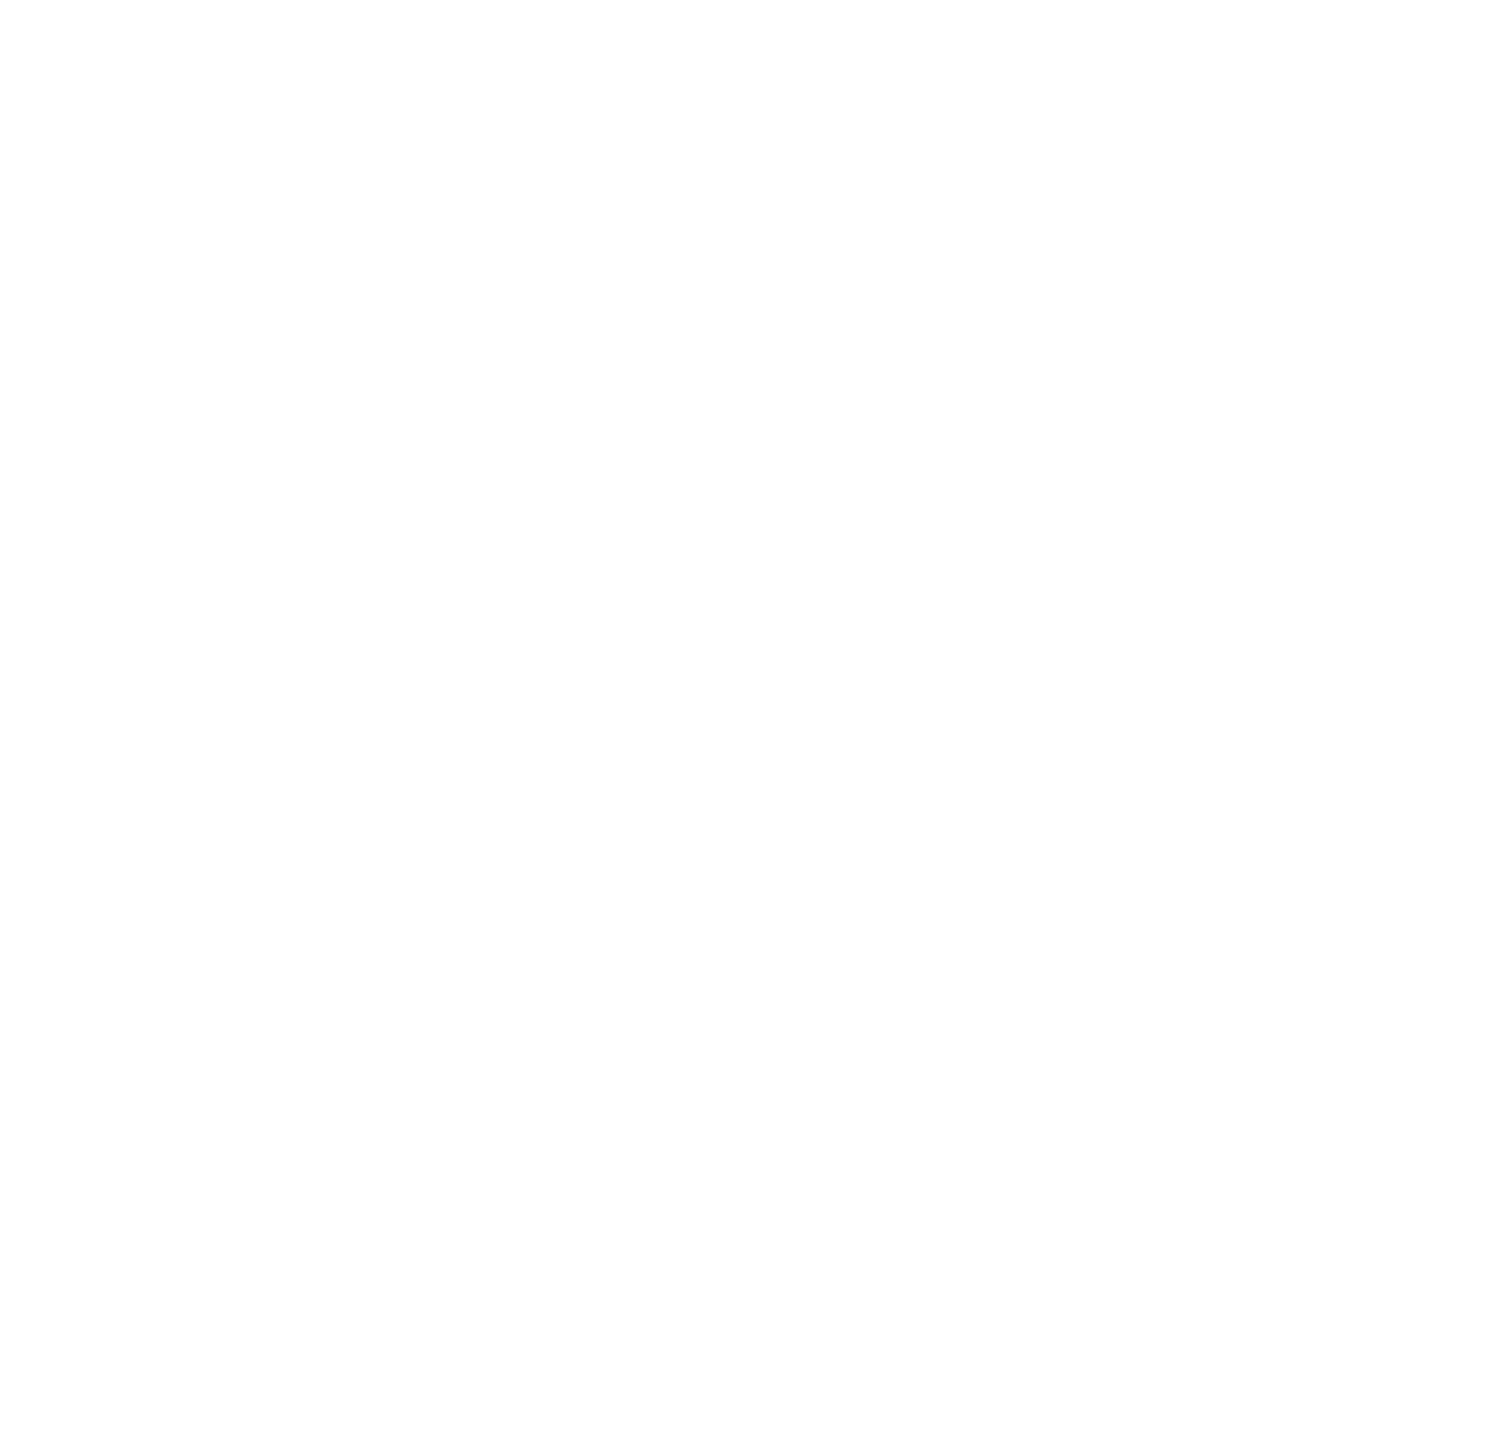 Stormchaser Improv